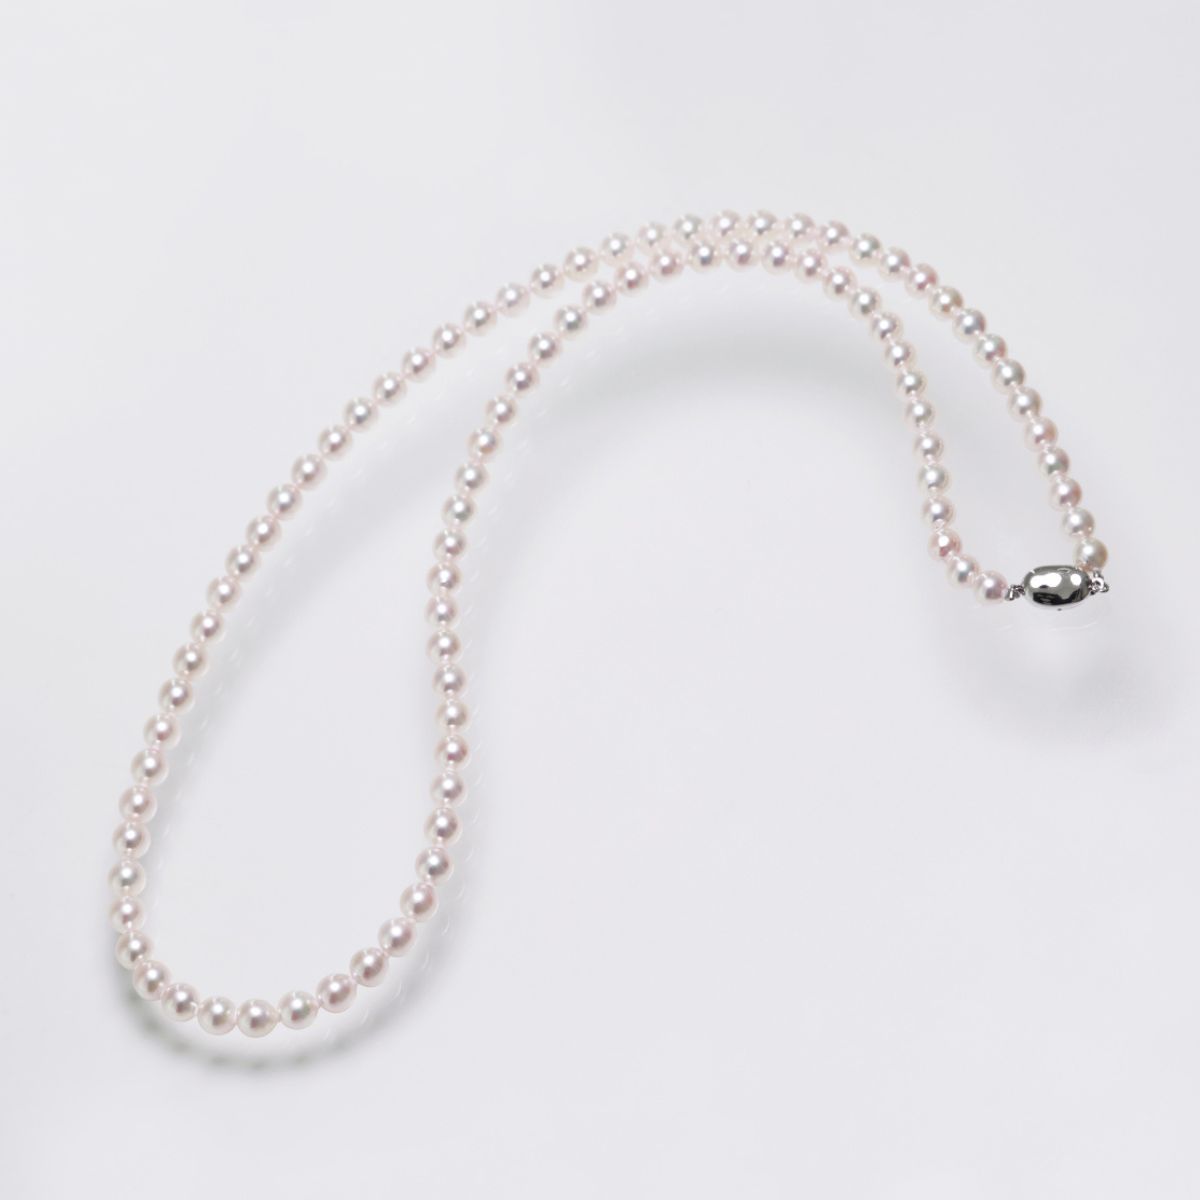 あこや真珠 ネックレス | 三重県真珠加工販売協同組合【MPO】